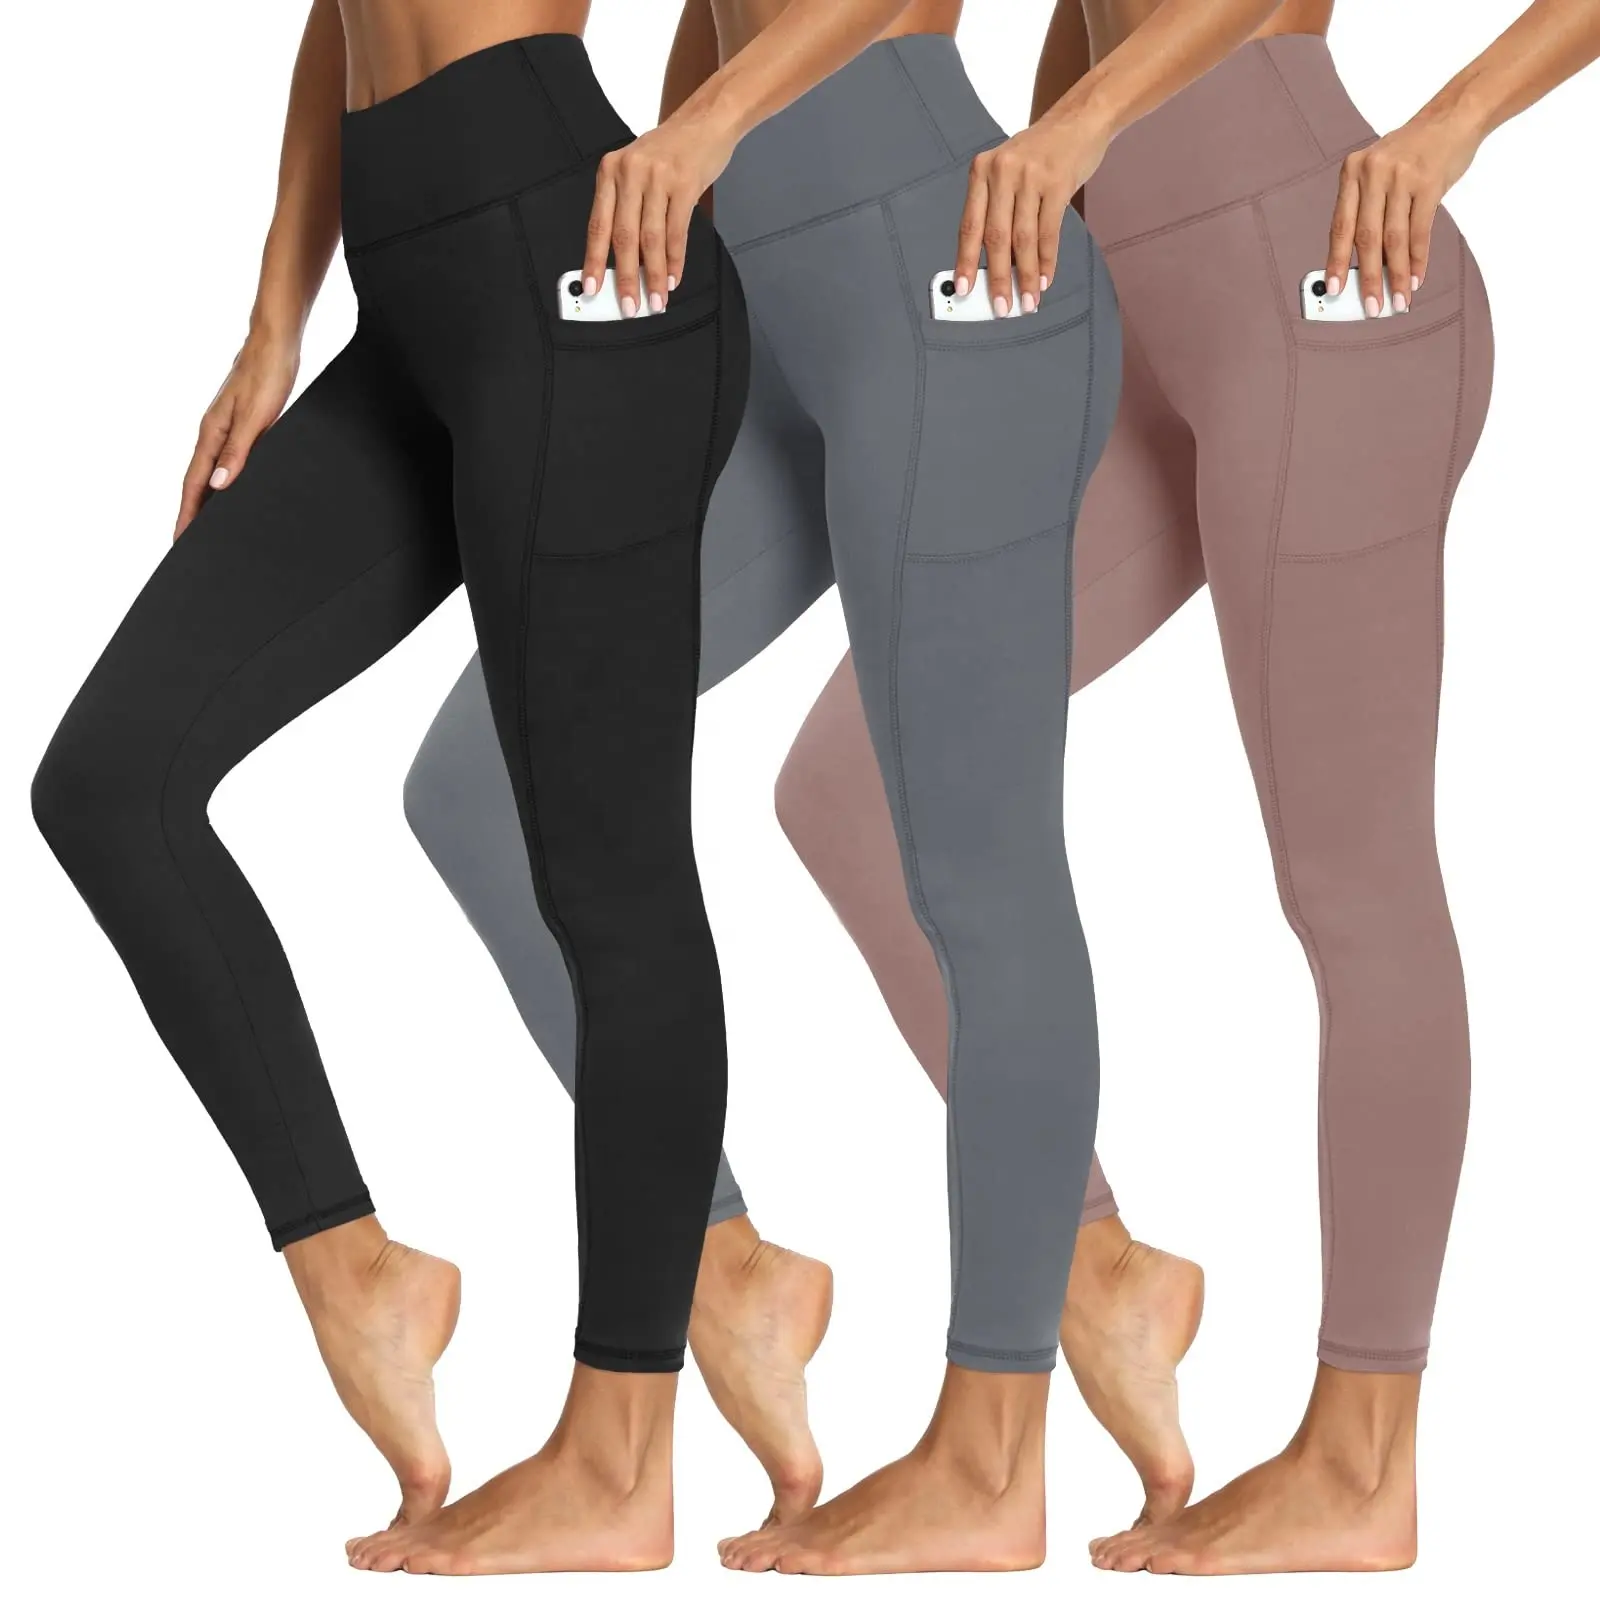 Ingrosso su misura ad alta vita sport allenamento Yoga pantaloni Leggings per le donne morbido poliestere palestra Fitness Leggings con tasca